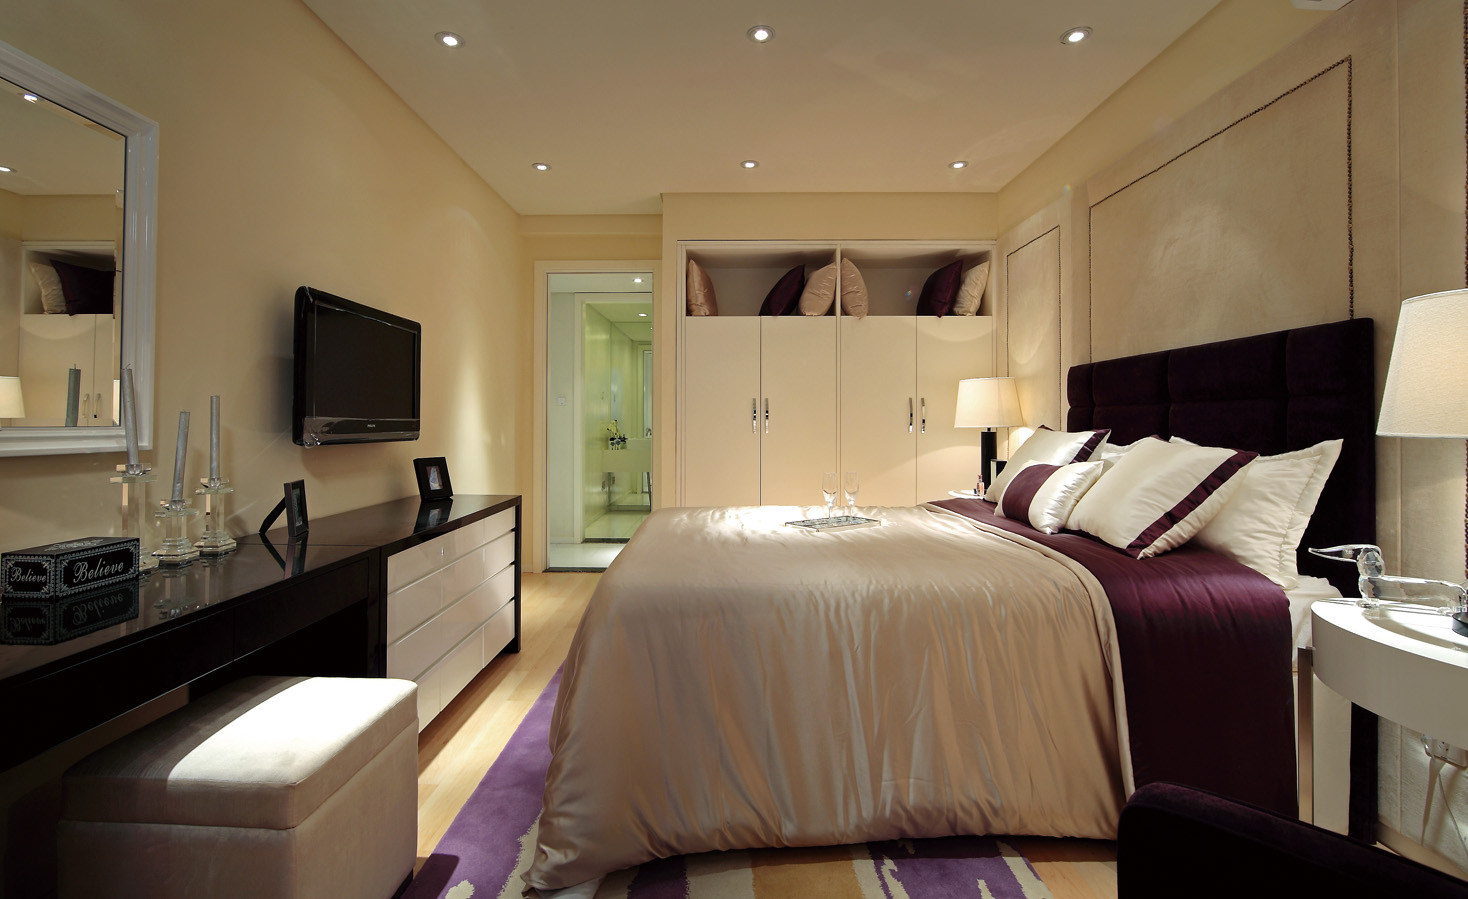 紫晶悦城两室两厅现代风格设计